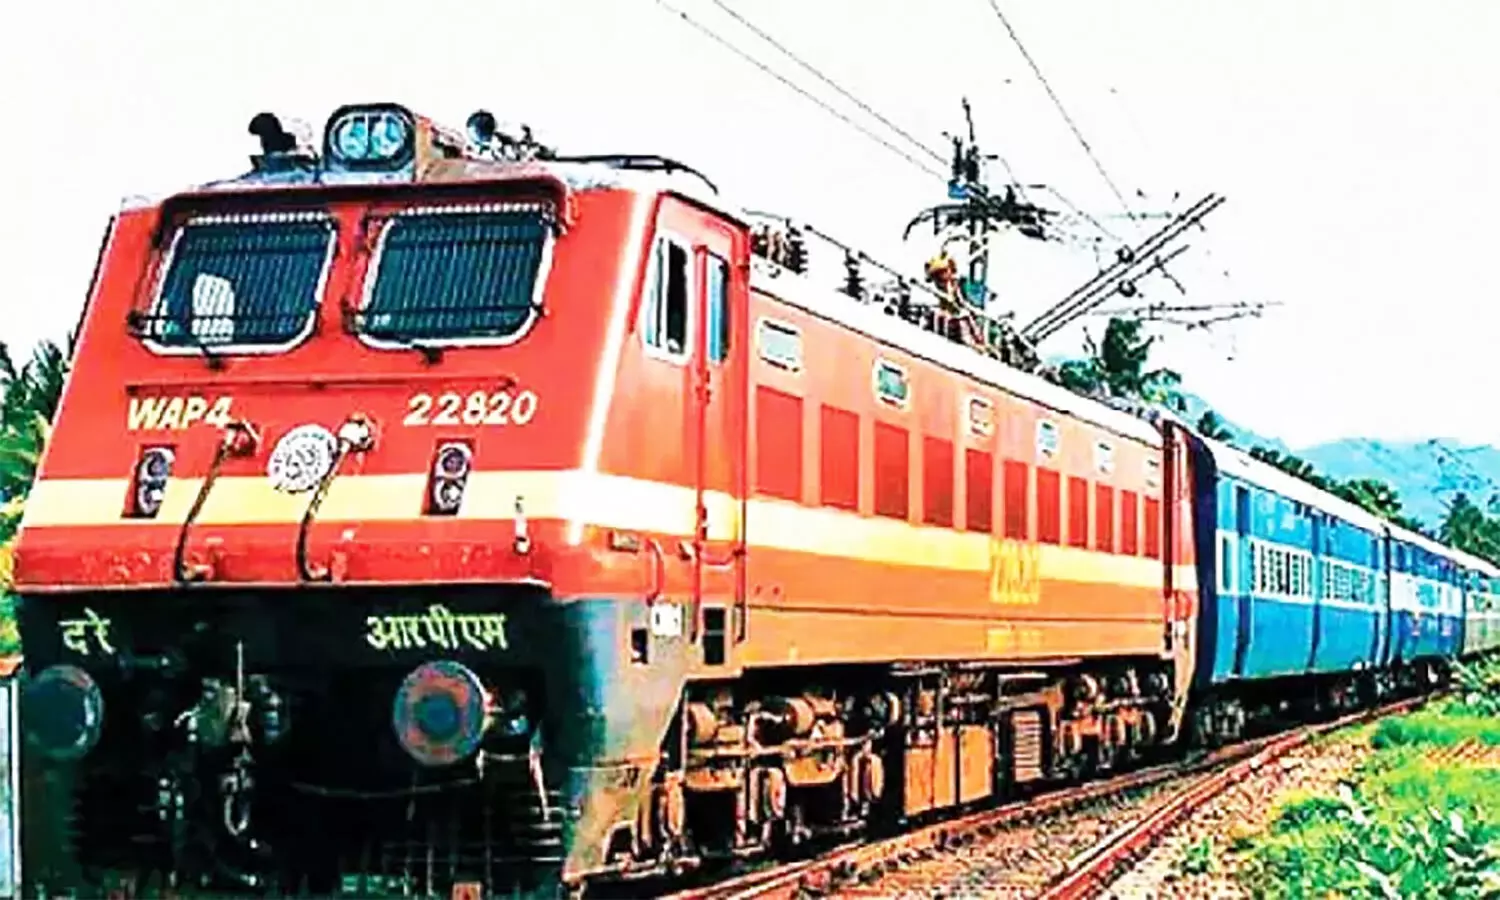 MP Railway News: एमपी से चलेंगी 4 स्पेशल ट्रेनें, कई का बदला रूट व समय, श्रद्धालुओं को विभिन्न तीर्थस्थलों का सैर करवाएगी भारत गौरव पर्यटक ट्रेन